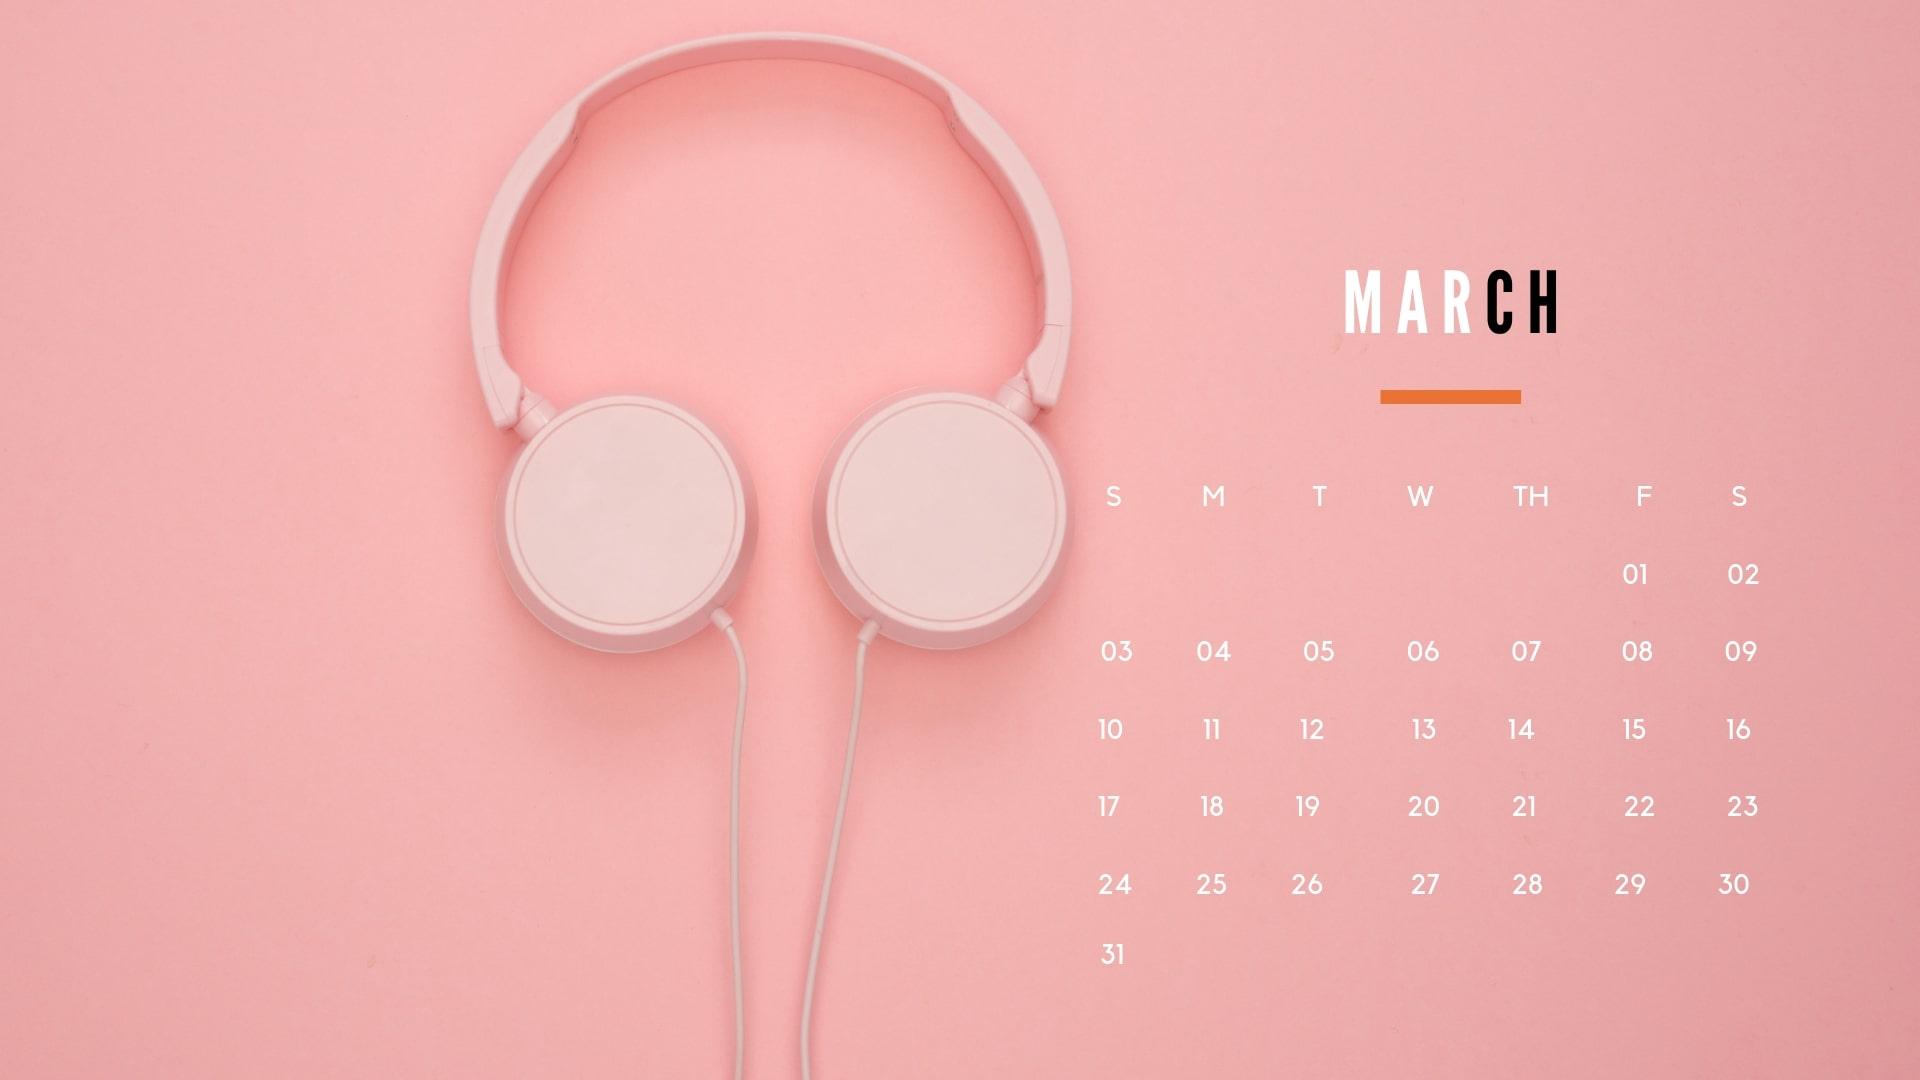 Calendar Wallpaper 2019: Download Monthly 2019 Calendar Wallpaper